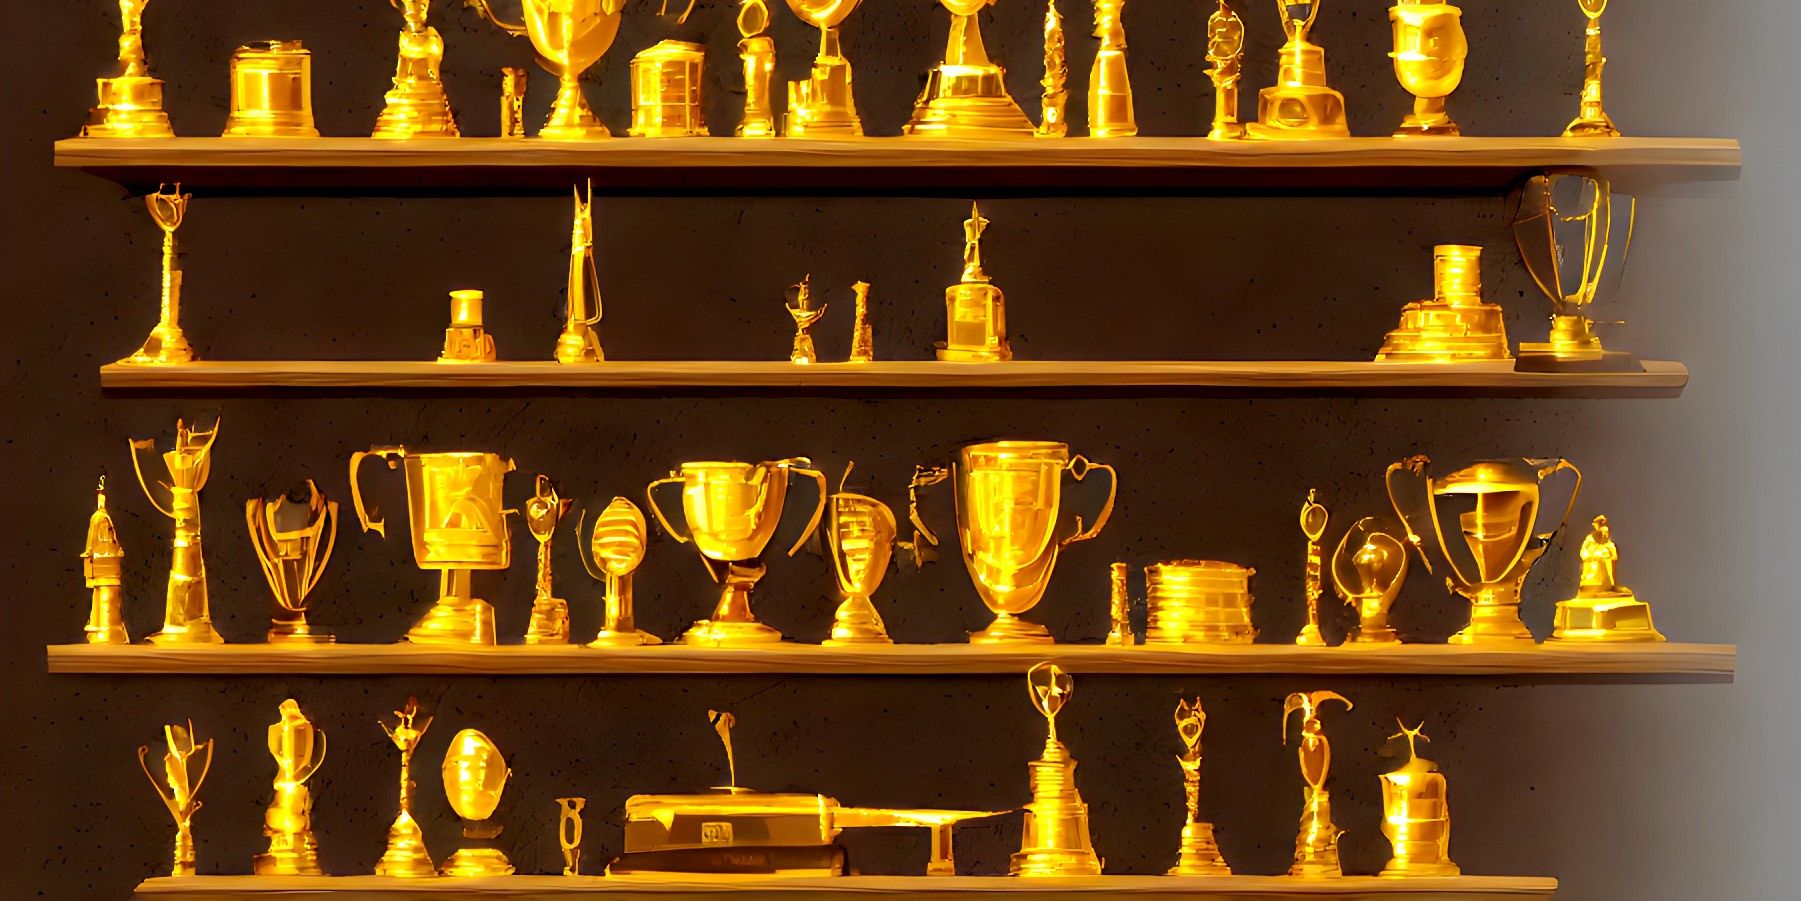 Prateleiras cheias de troféus de ouro